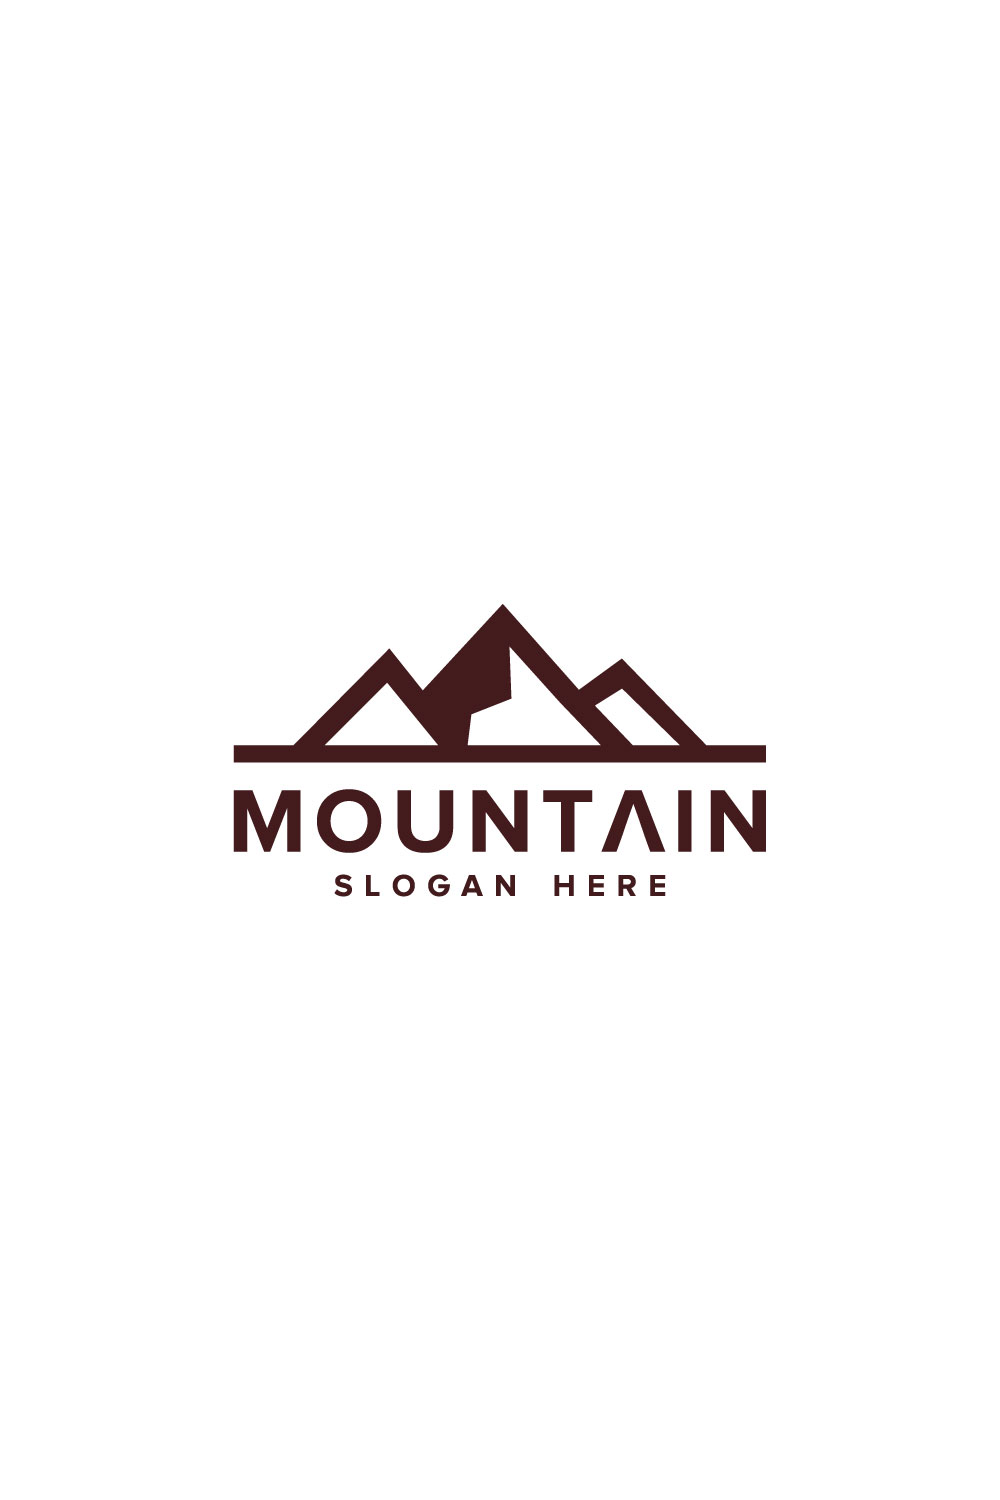 Mountain Logo Vector Design - Pinterest.